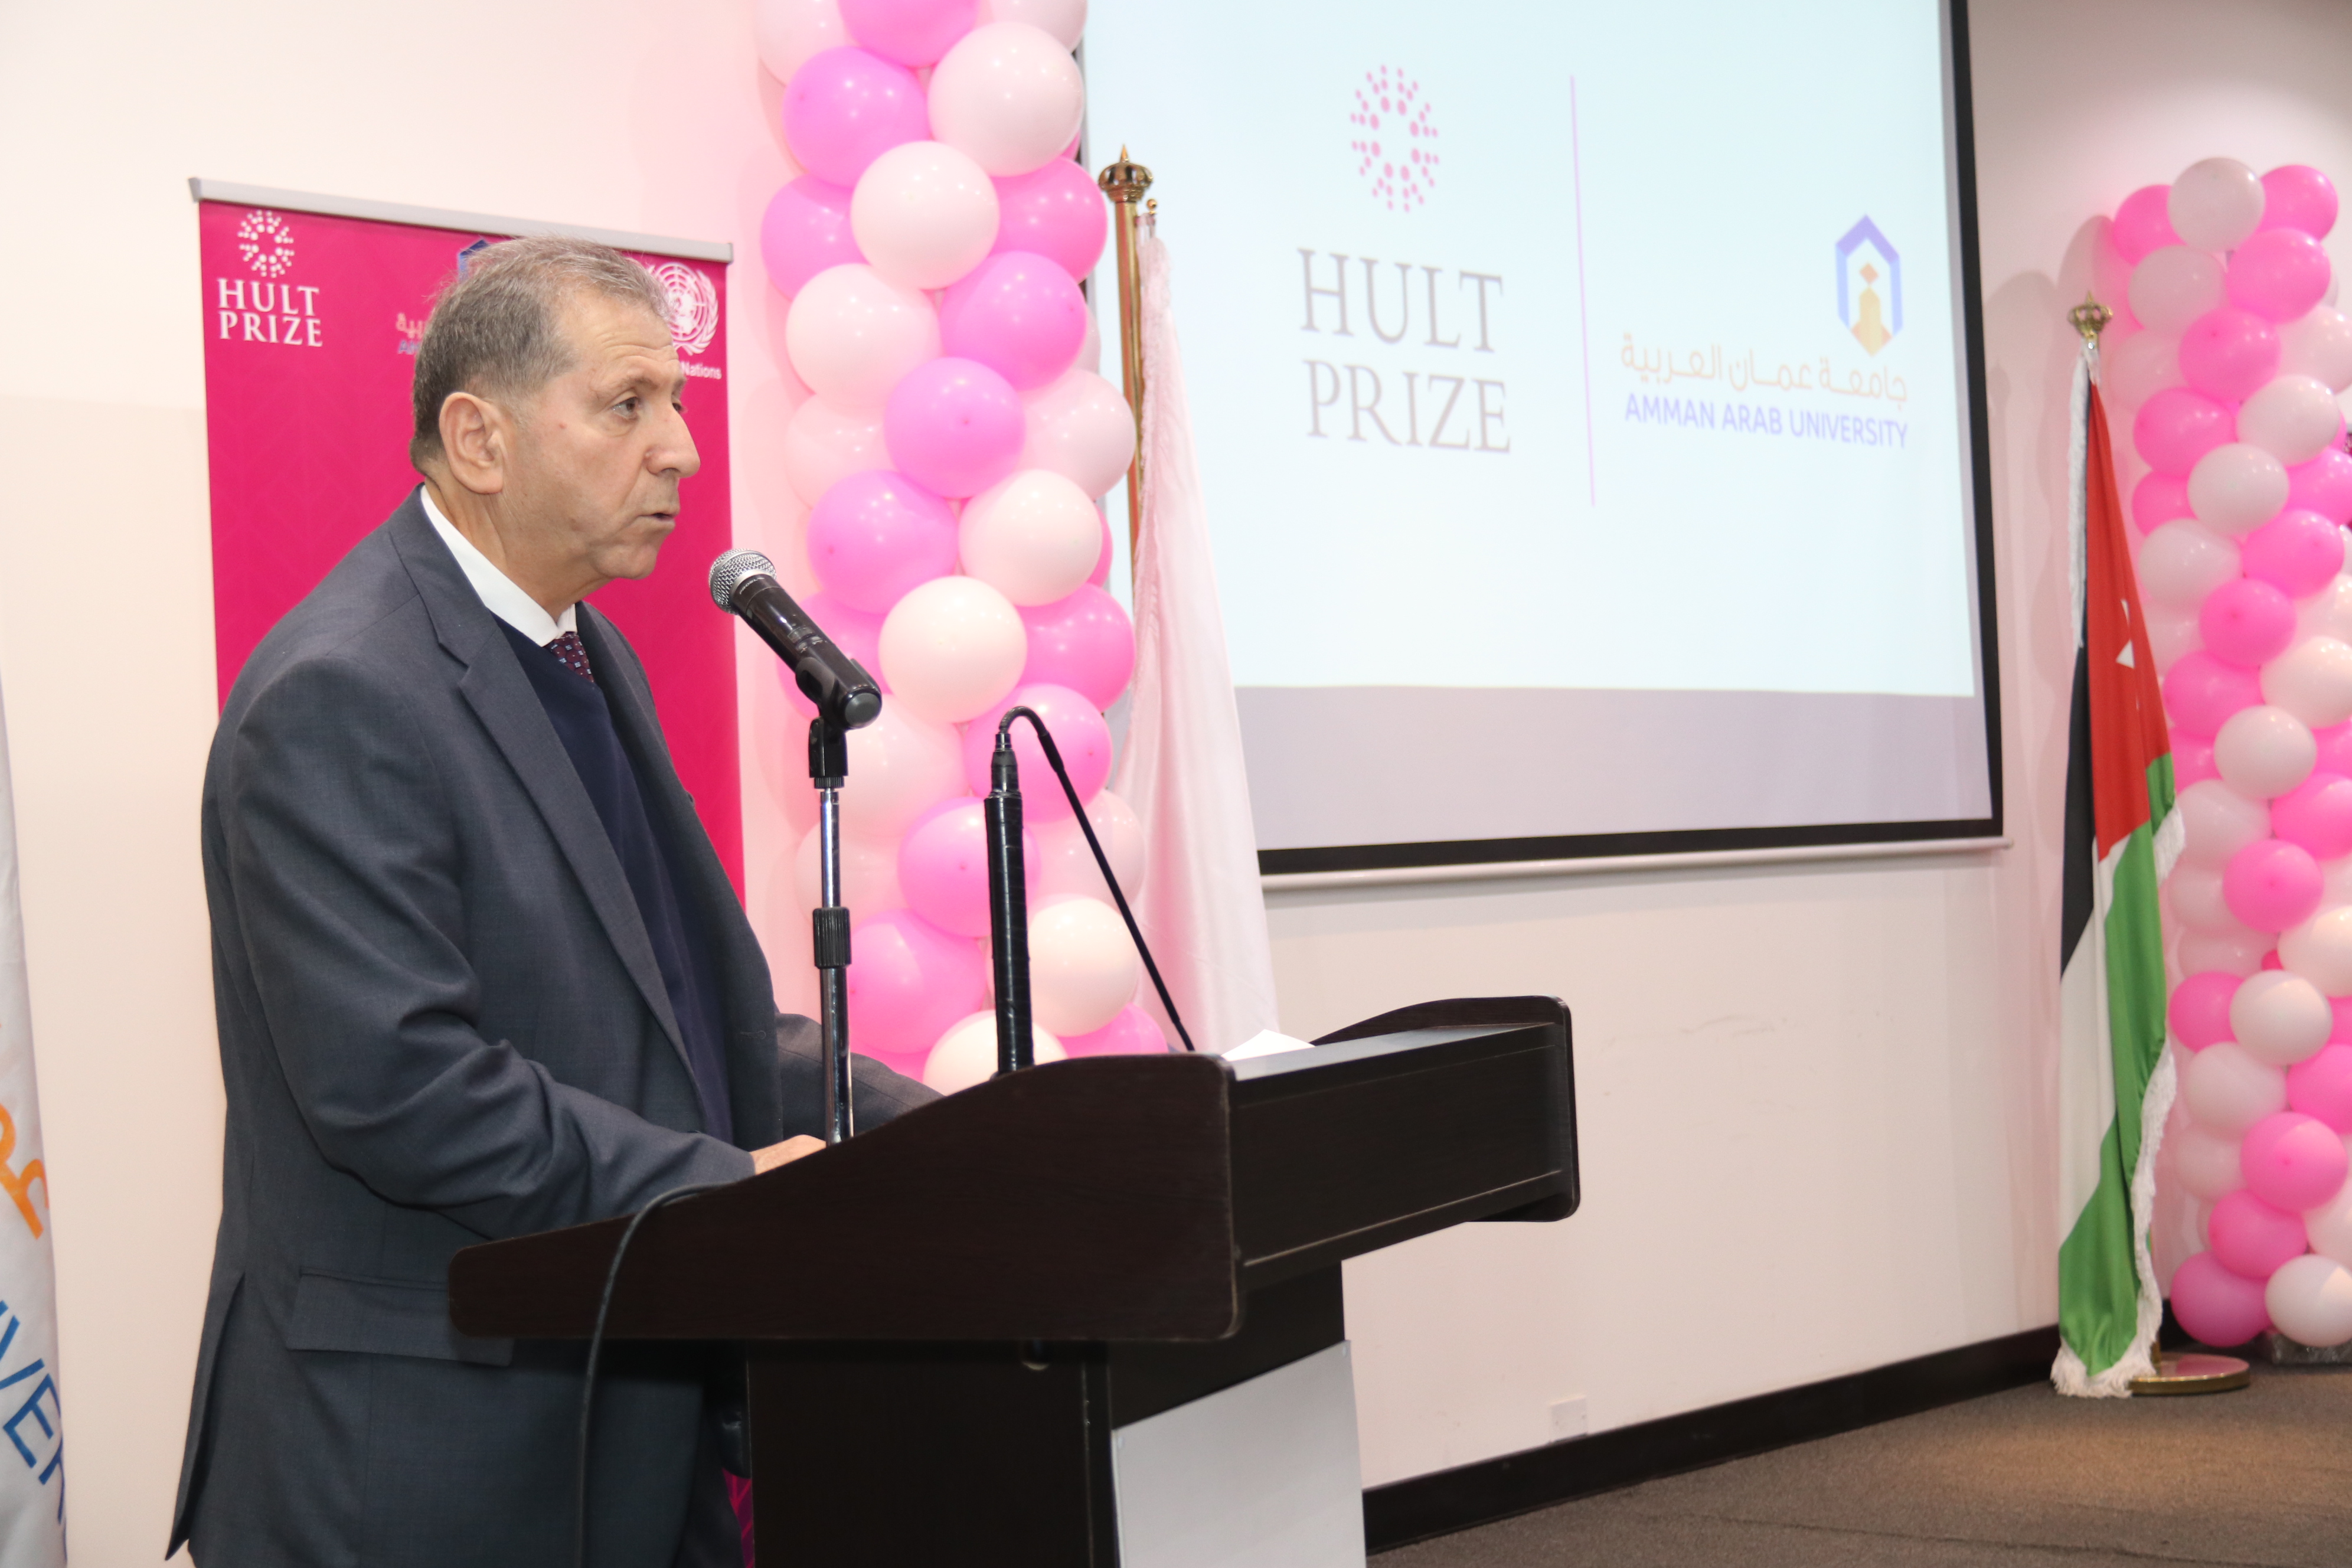 إطلاق فعاليات مسابقة "هالت برايز" في جامعة عمان العربية5